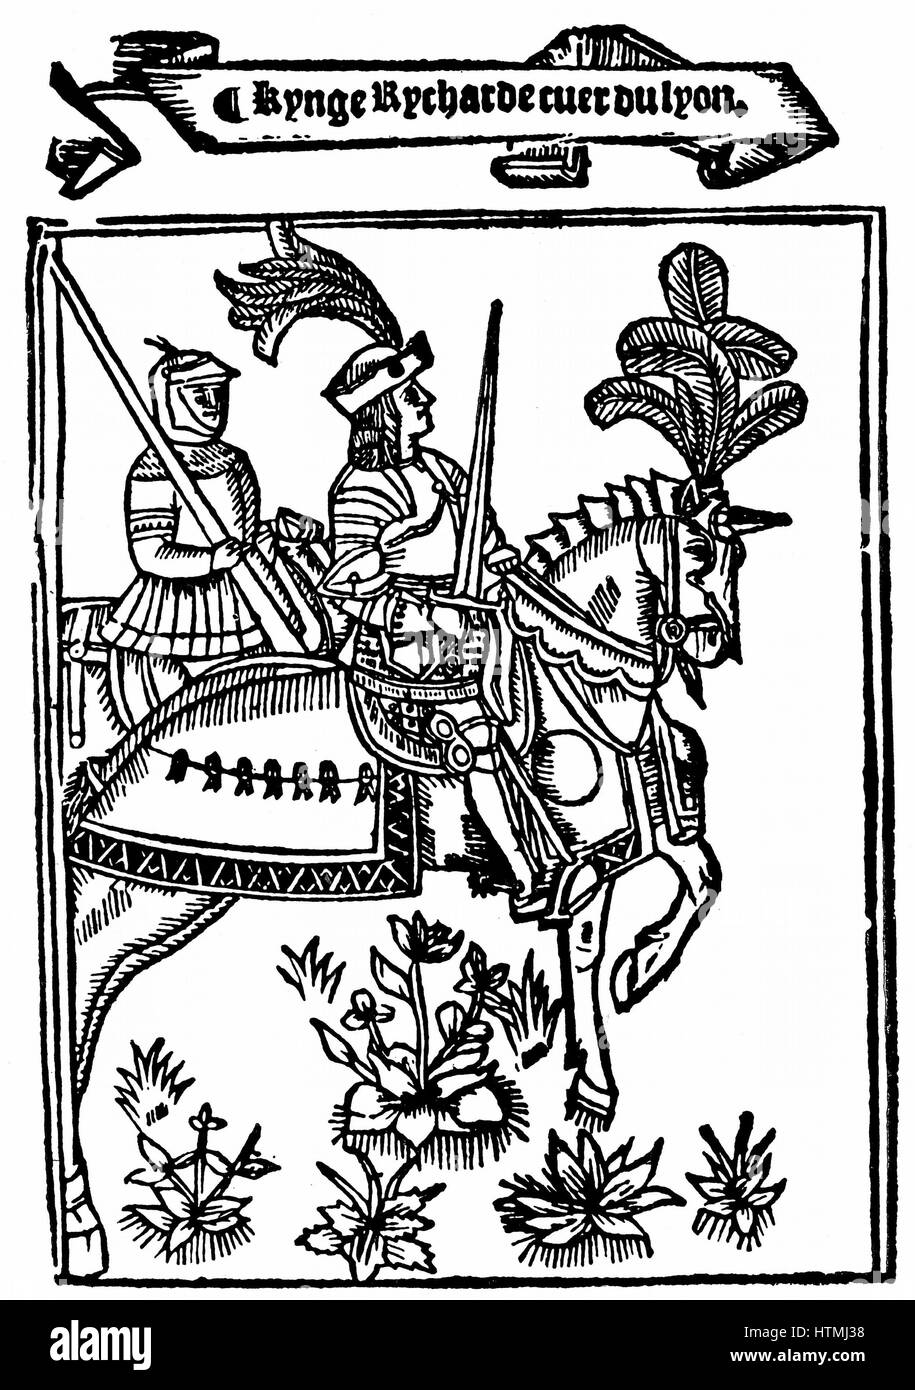 Richard I (1157-99) Coeur de Lion (Löwenherz), König von England von 1189. Von metrischen Romanze "Richard Coeur de Lion" von Wynkyn de Worde (dc1535), London, 1528 gedruckt. Holzschnitt zeigt Richard in Rüstung auf aufgezäumtes Pferd montiert. Stockfoto